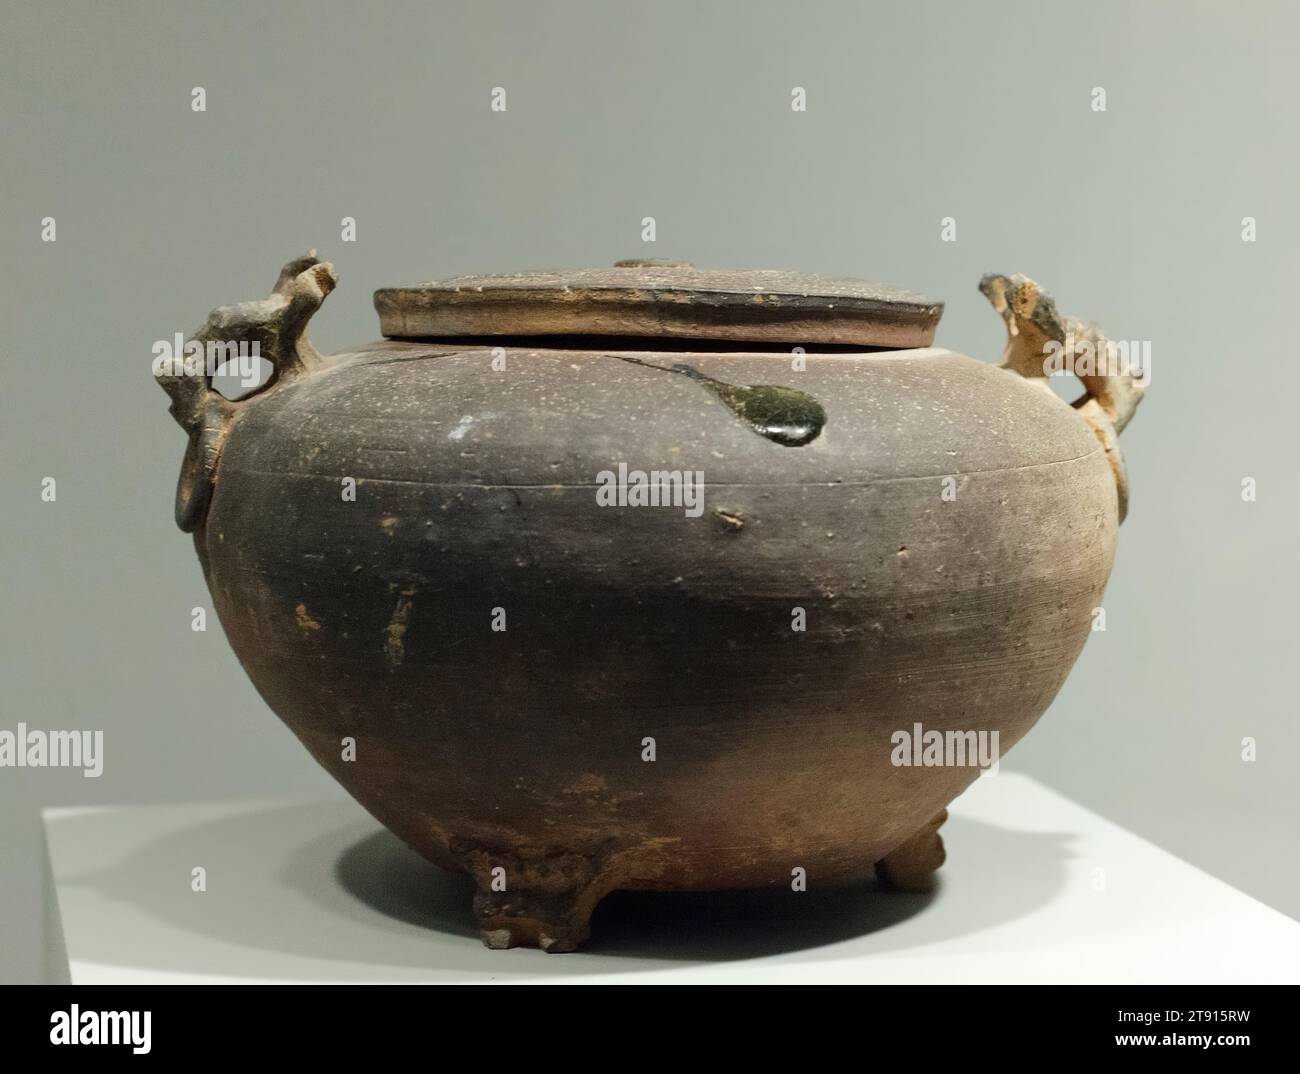 Vaso coperto, IV secolo a.C., 6 x 10 3/8 pollici (15,2 x 26,35 cm) (a: vaso)3/4 x 7/8" (1,91 x 14,92 cm) (b: Coperchio), gres con smalto "accidentale", Cina, IV secolo a.C., realizzato a imitazione di un vaso di bronzo rituale, questo gres a fuoco alto è smaltato tranne che per alcuni spruzzi accidentali di smalto verde sul coperchio. Durante tutto il periodo Zhou, il grès impressionato e ad alto fusto continuò ad essere raffinato, specialmente nei tratti inferiori dello Yangzi e delle province sud-orientali. Per molti anni, le pietre smaltate e non smaltate sono rimaste simili nella tecnica e nella decorazione. Foto Stock